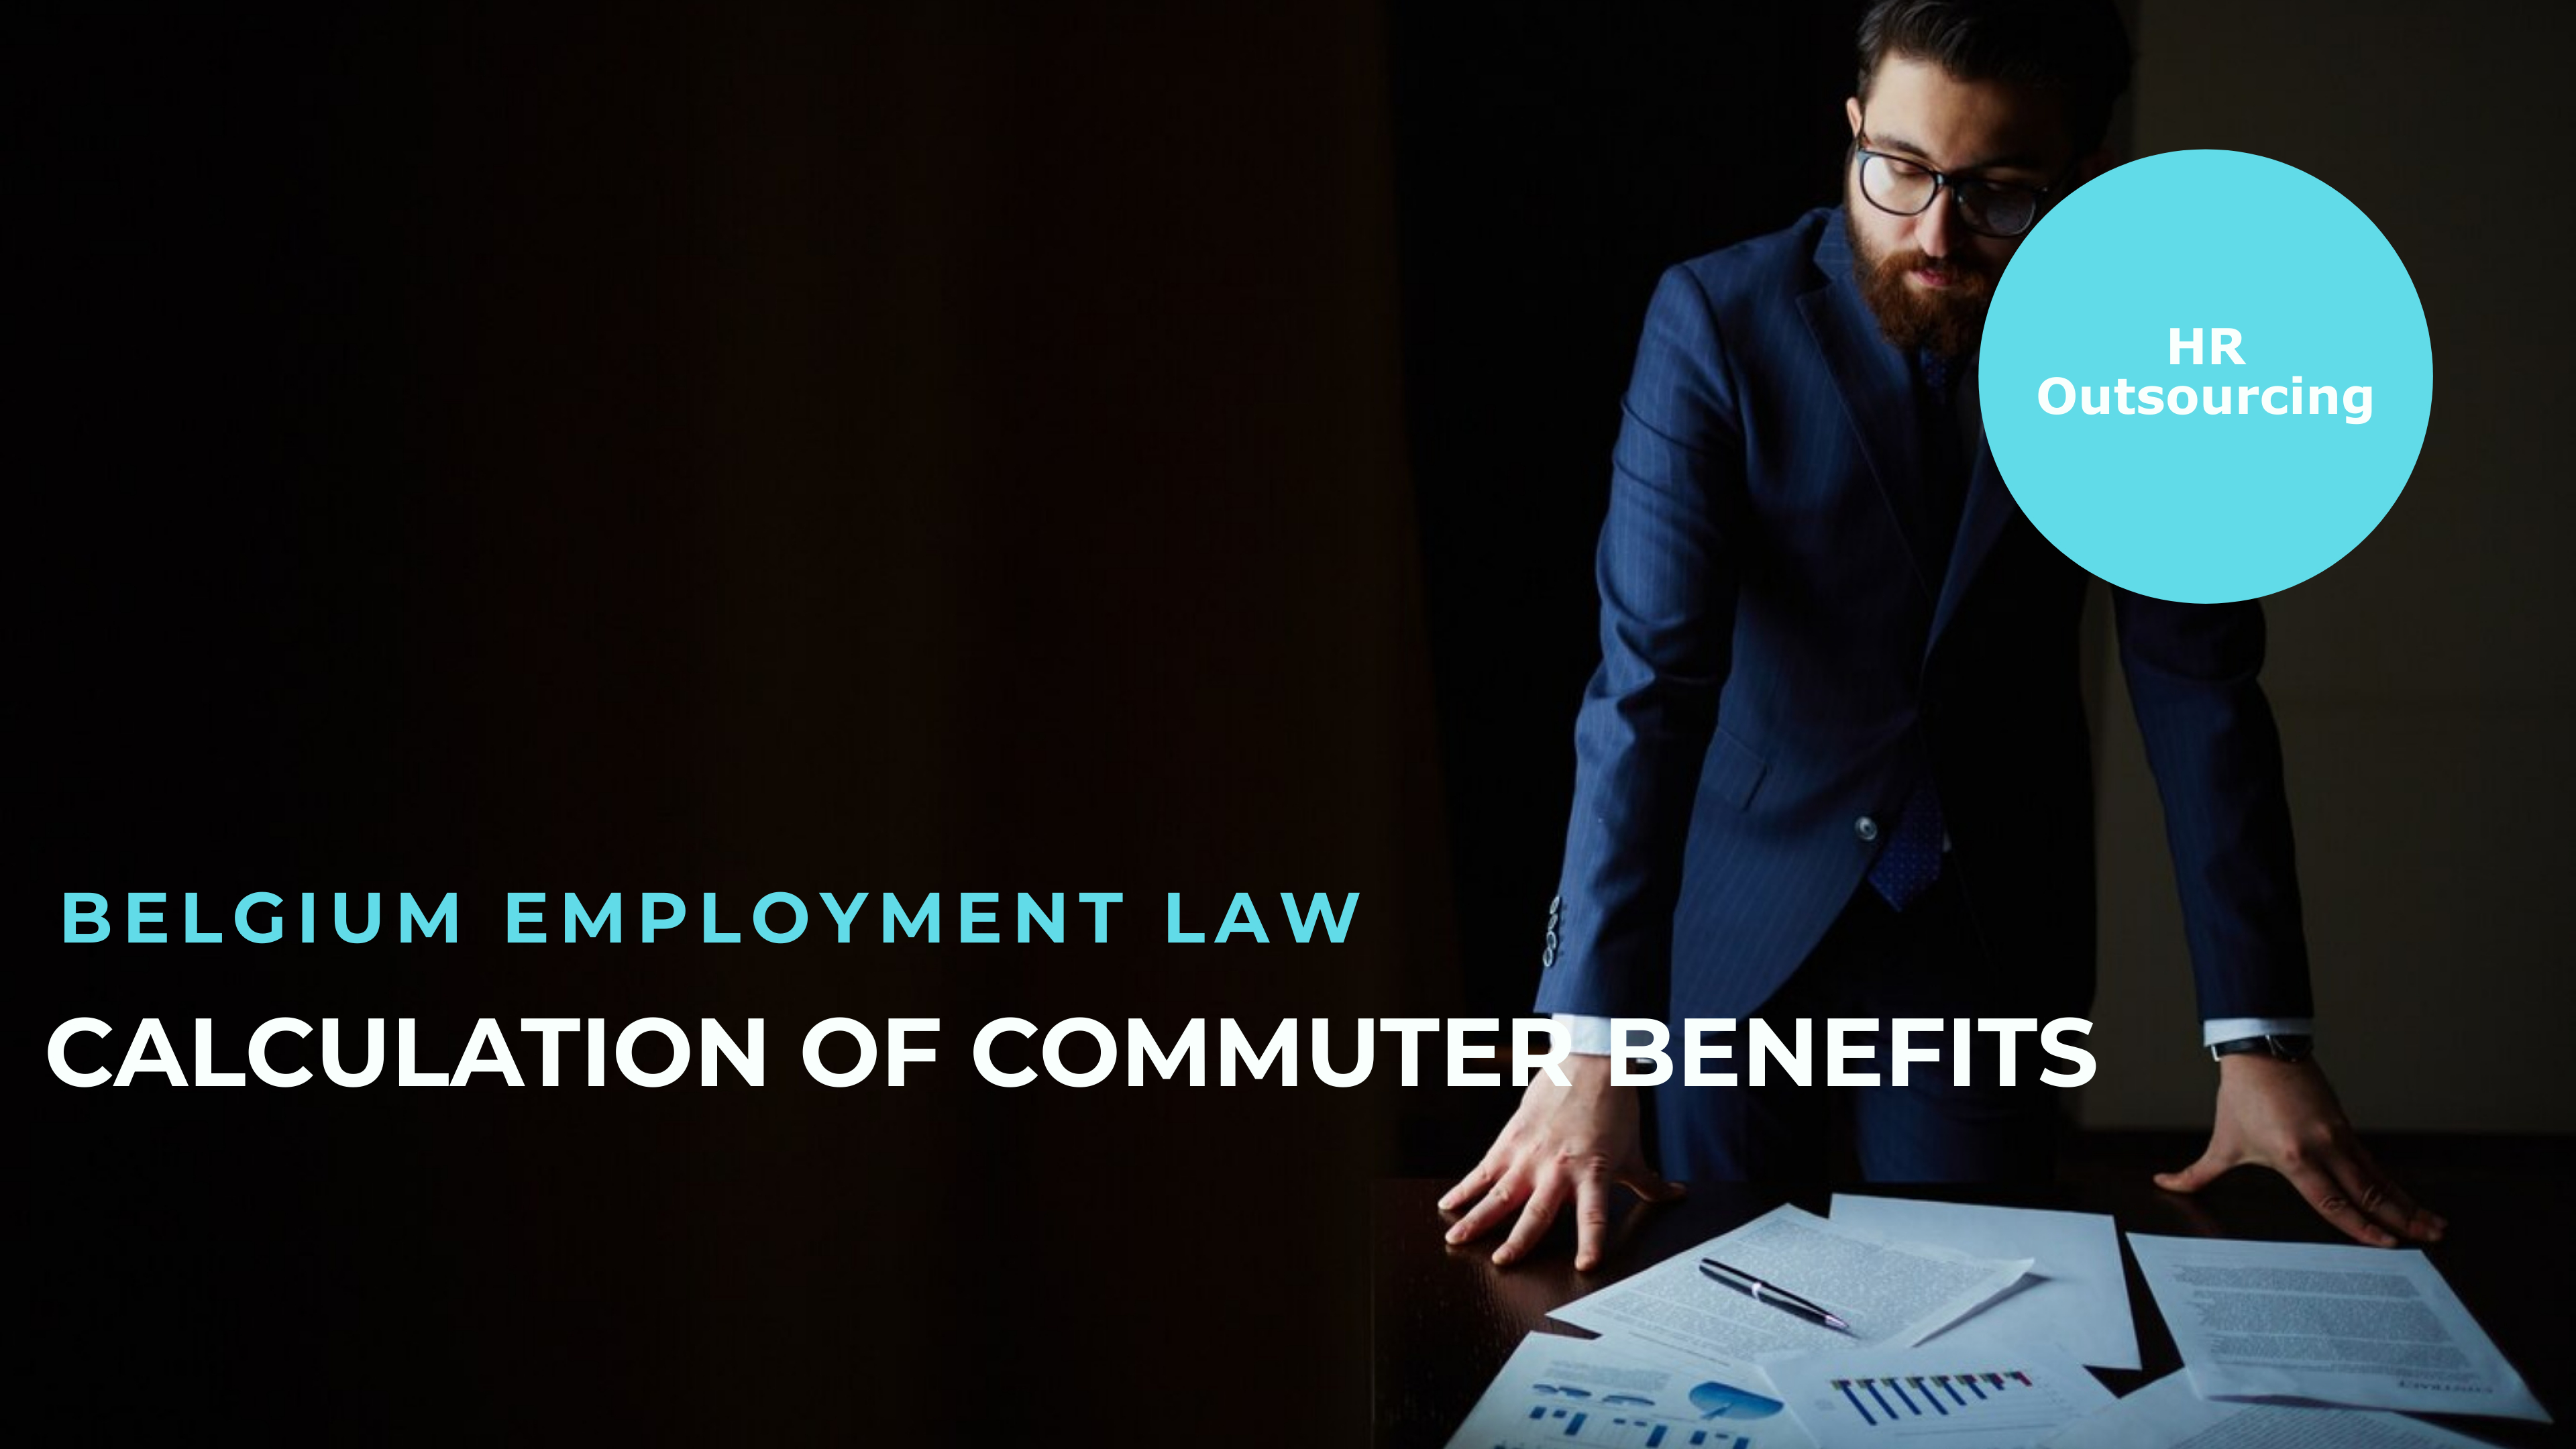 Commuter benefits in Belgium